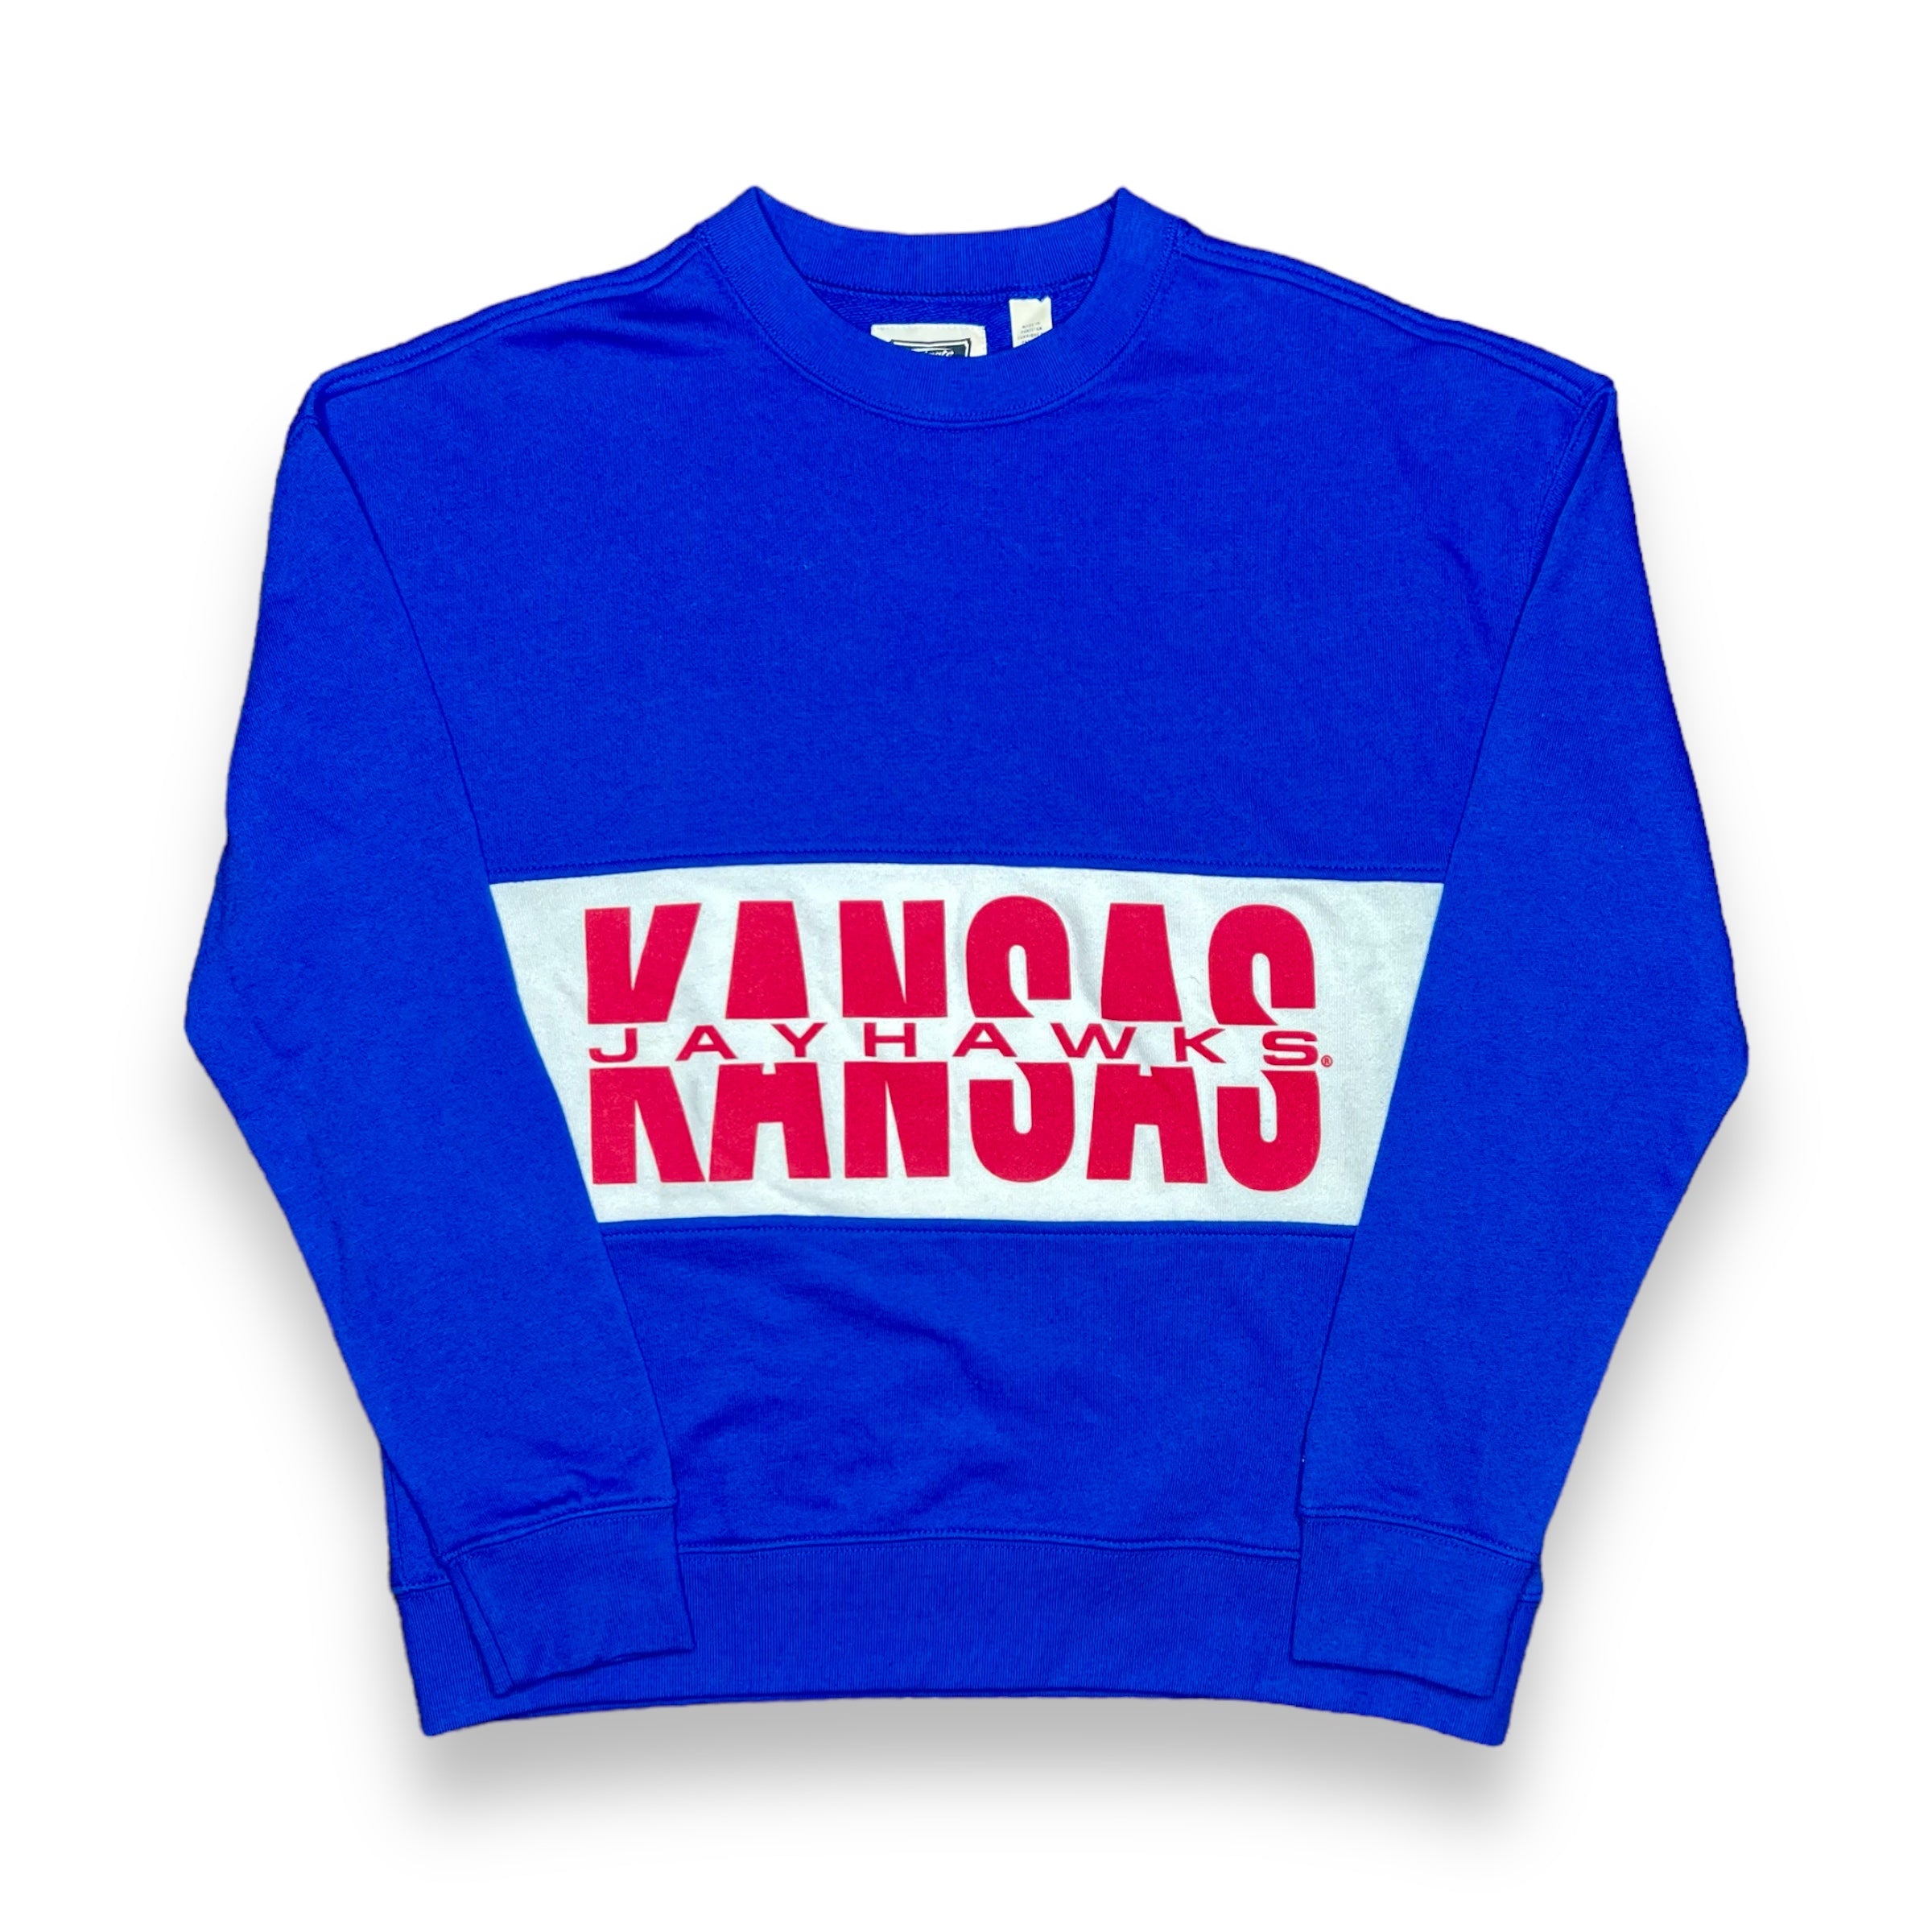 Vintage KU Sweatshirt - (S)